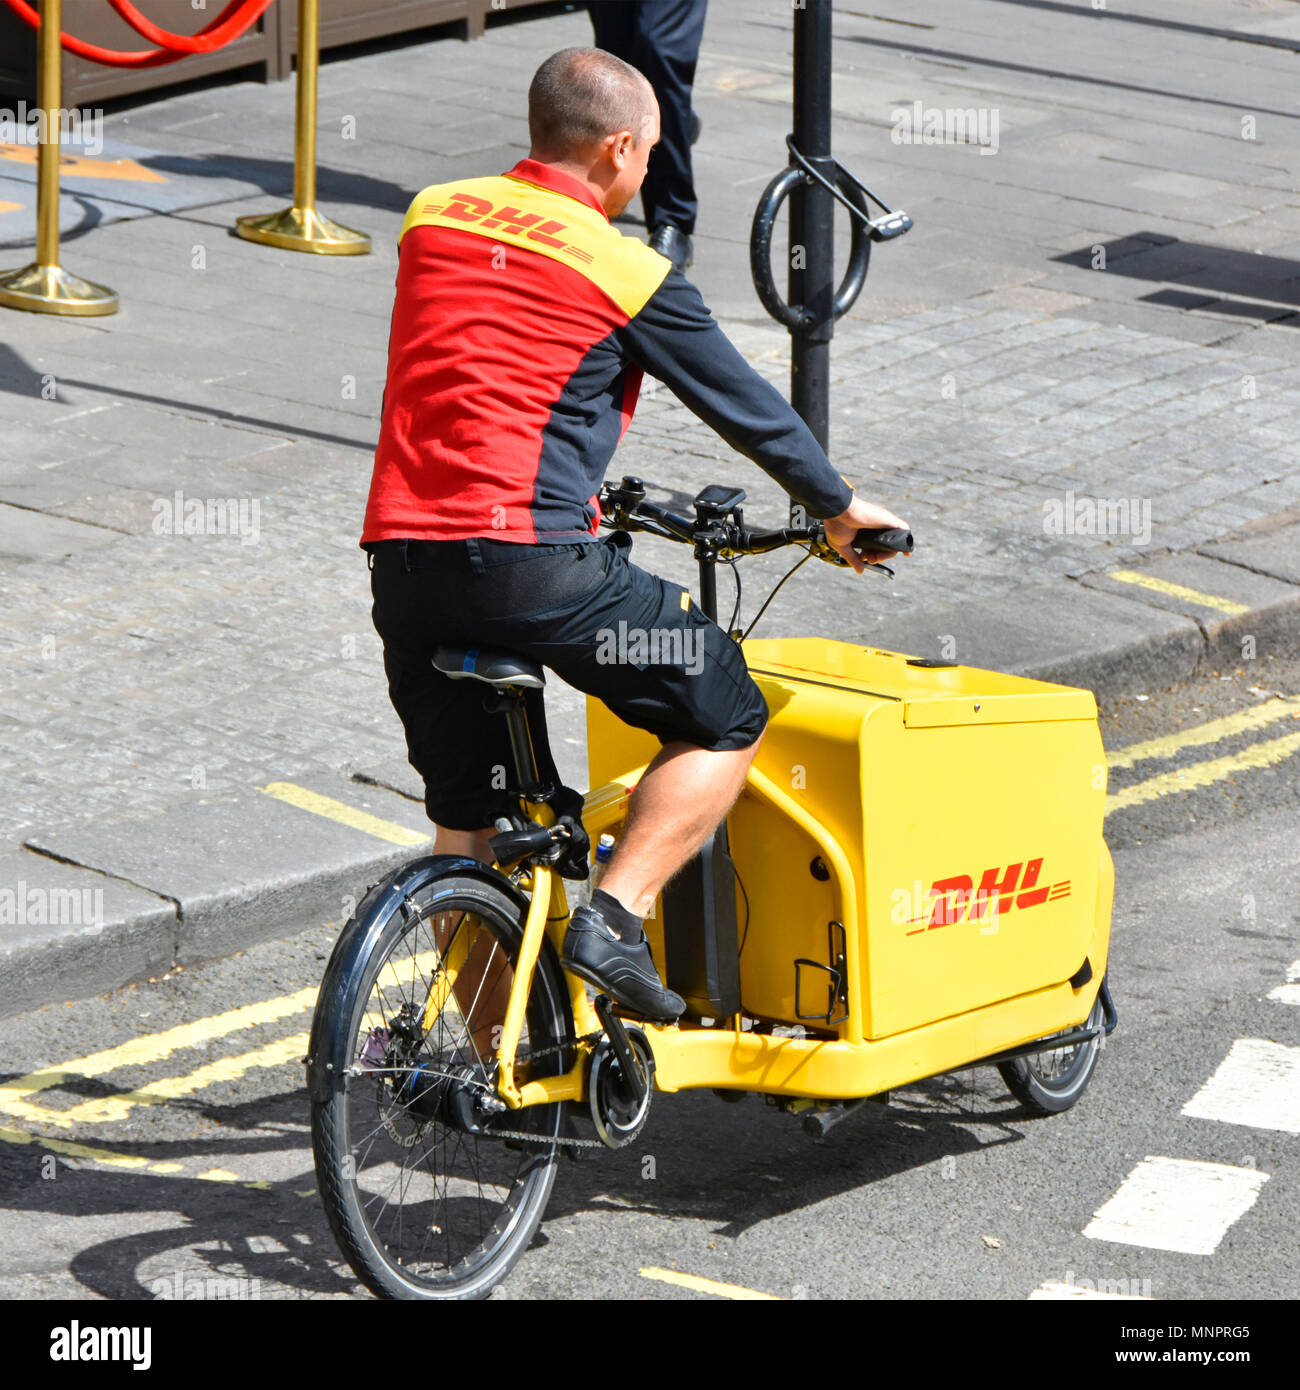 Offres d'emploi inhabituel livraison colis dhl homme en uniforme au travail à vélo sur route à vélo pédale fret fret la livraison de colis London UK Banque D'Images